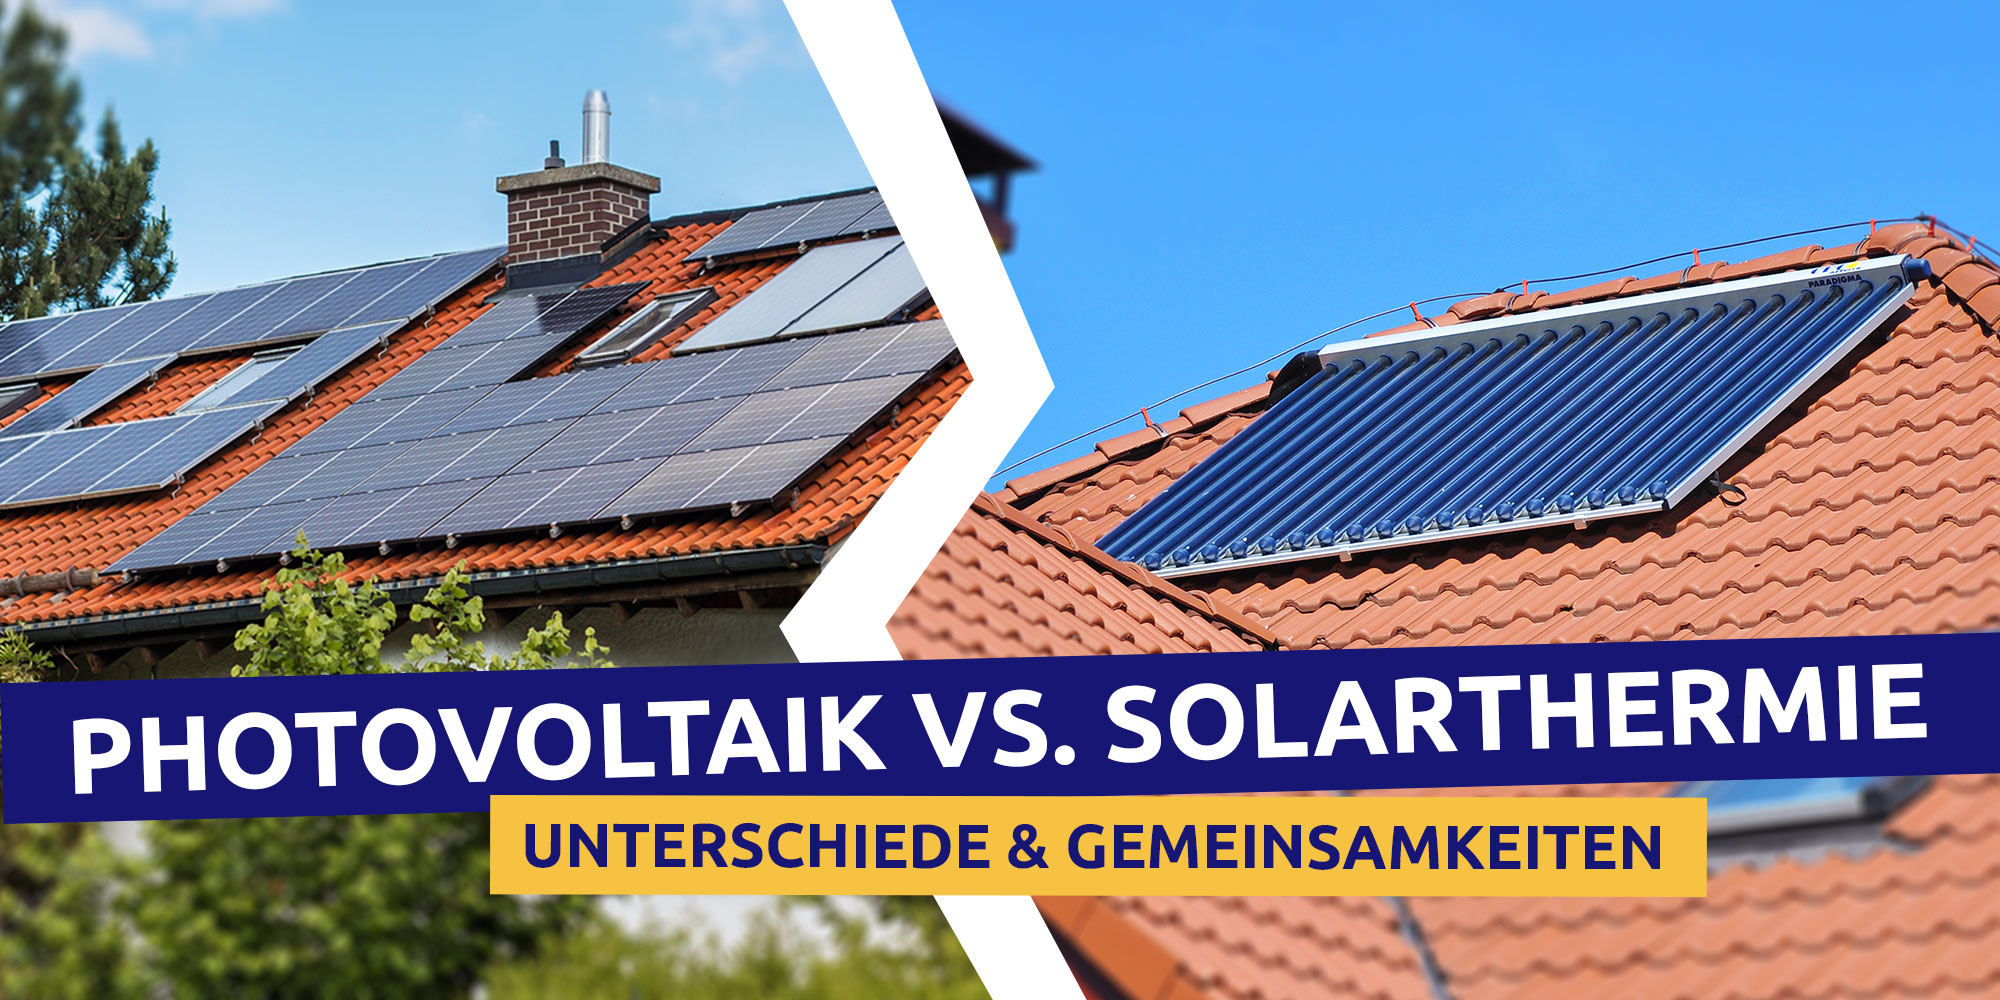 Auf der linken Seite des Bildes ist ein Einfamilienhaus mit einer Photovoltaikanlage auf dem Dach. Auf der rechten Seite ist ein rotes Ziegeldach mit Solarthermieanlage abgebildet.